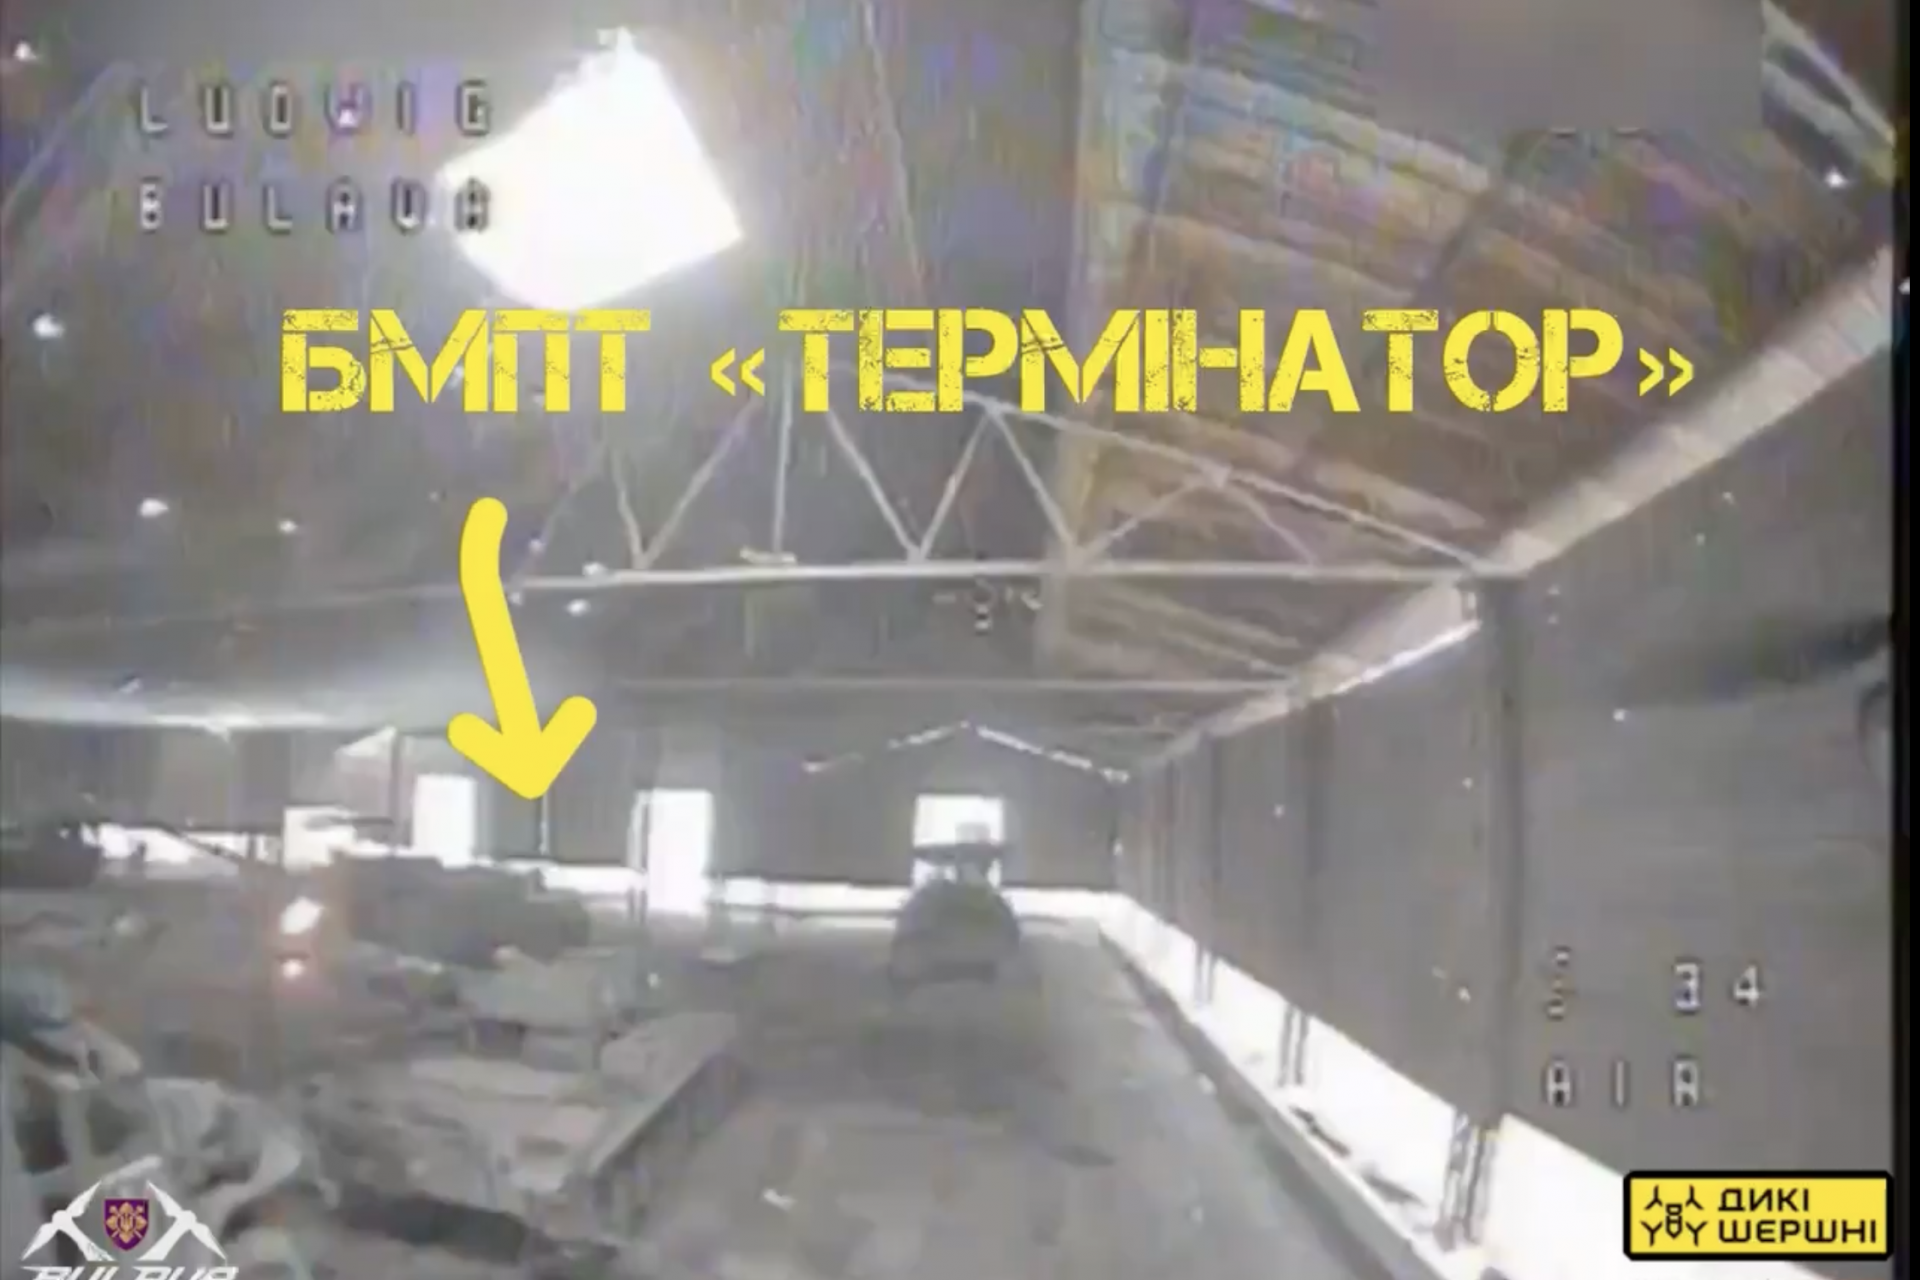 「BMPT テルミナートル」を破壊